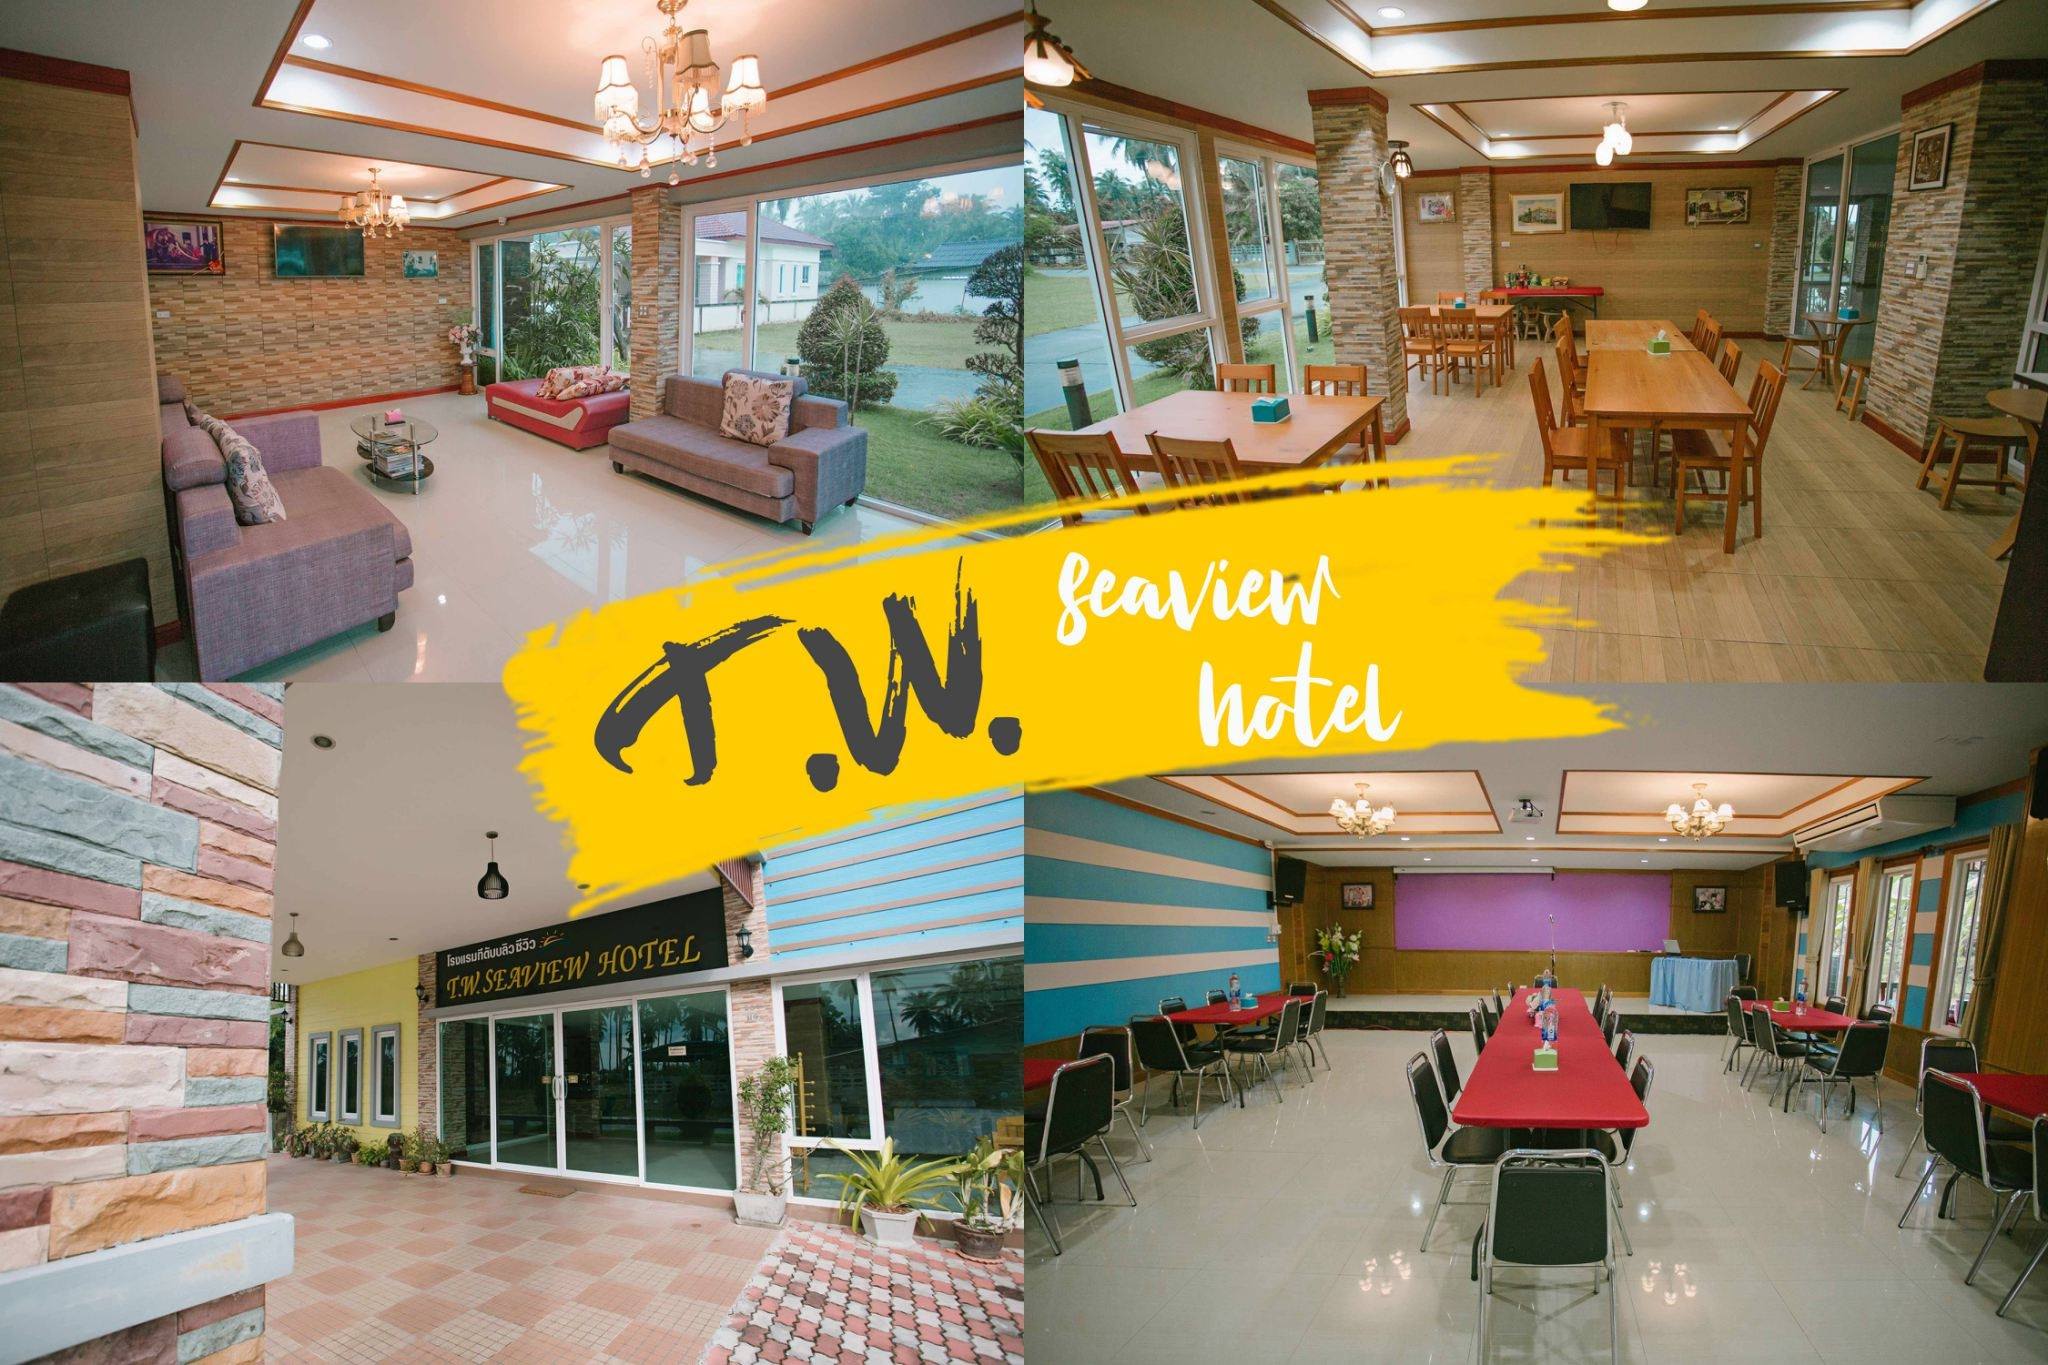  18.-โรงแรม-TW-Seaview-Hotel-https://nakhonsidee.com/show/read/4/182
 checkin,nakhonsithammarat,ของกิน,ร้านอาหาร,จุดเช็คอิน,ที่เที่ยว